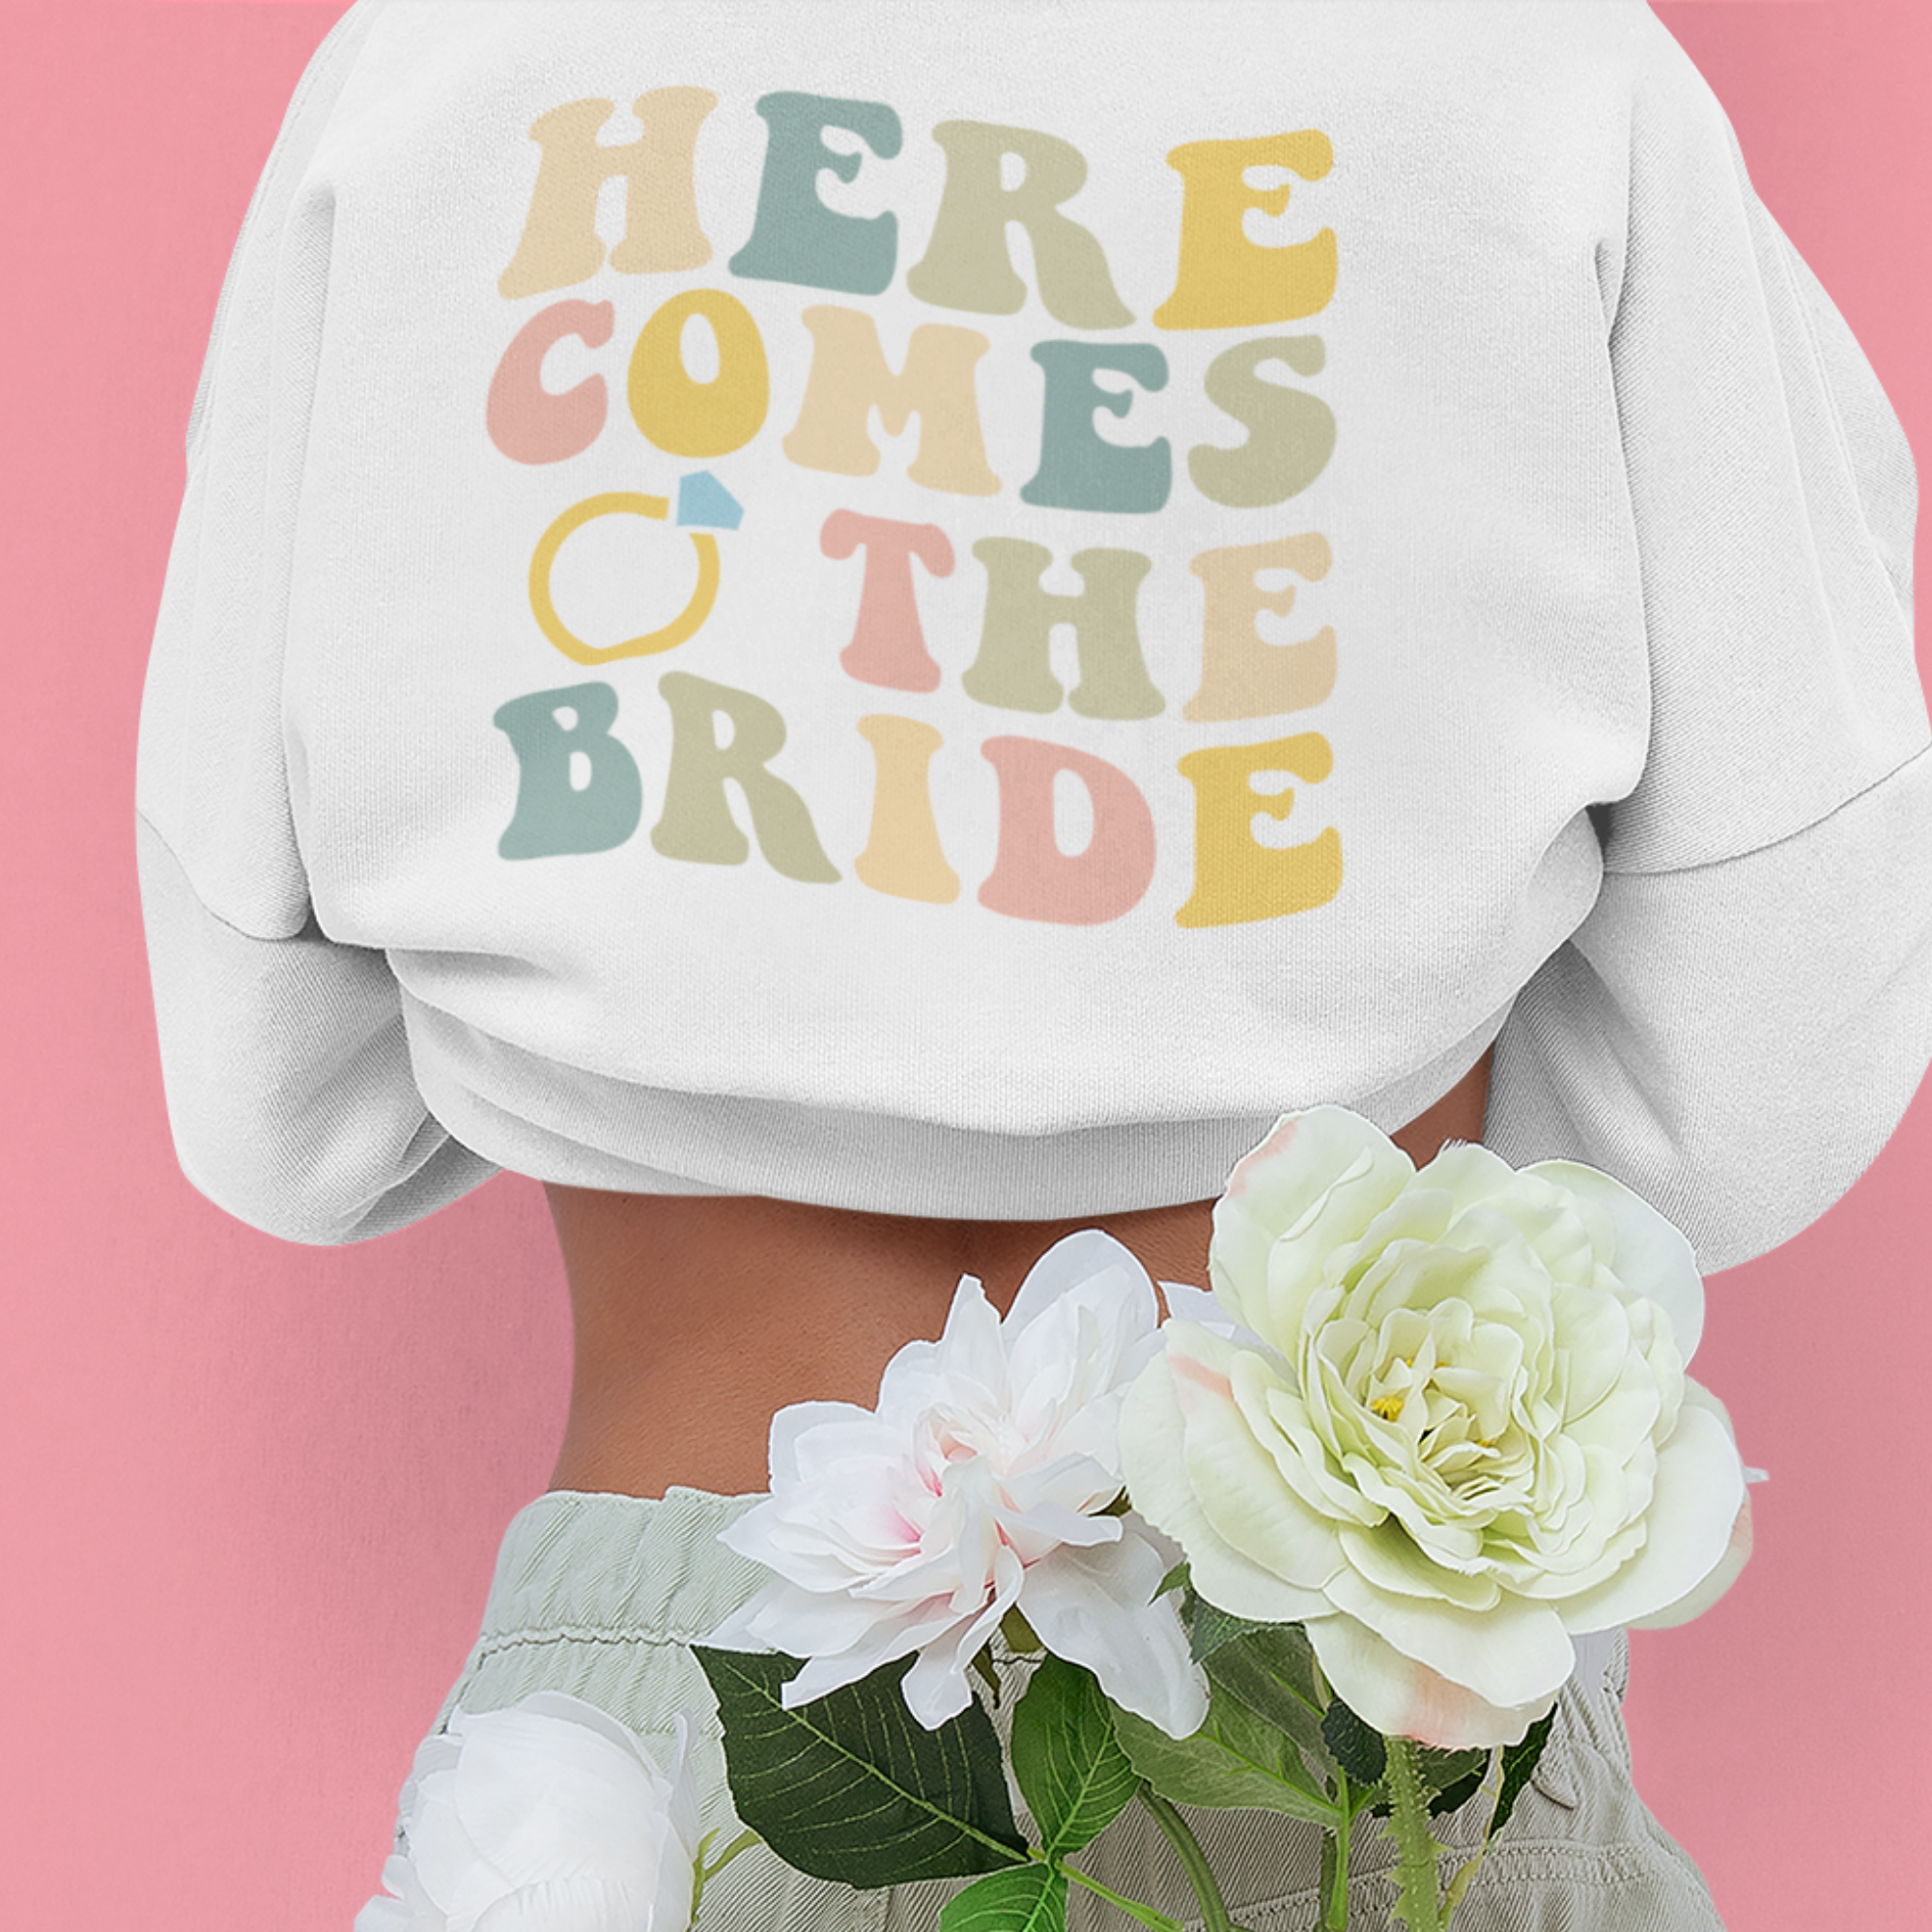 Here Comes The Bride Crewneck Sweatshirt - Bachelorette Party Sweatshirt, Retro Bride Sweatshirt